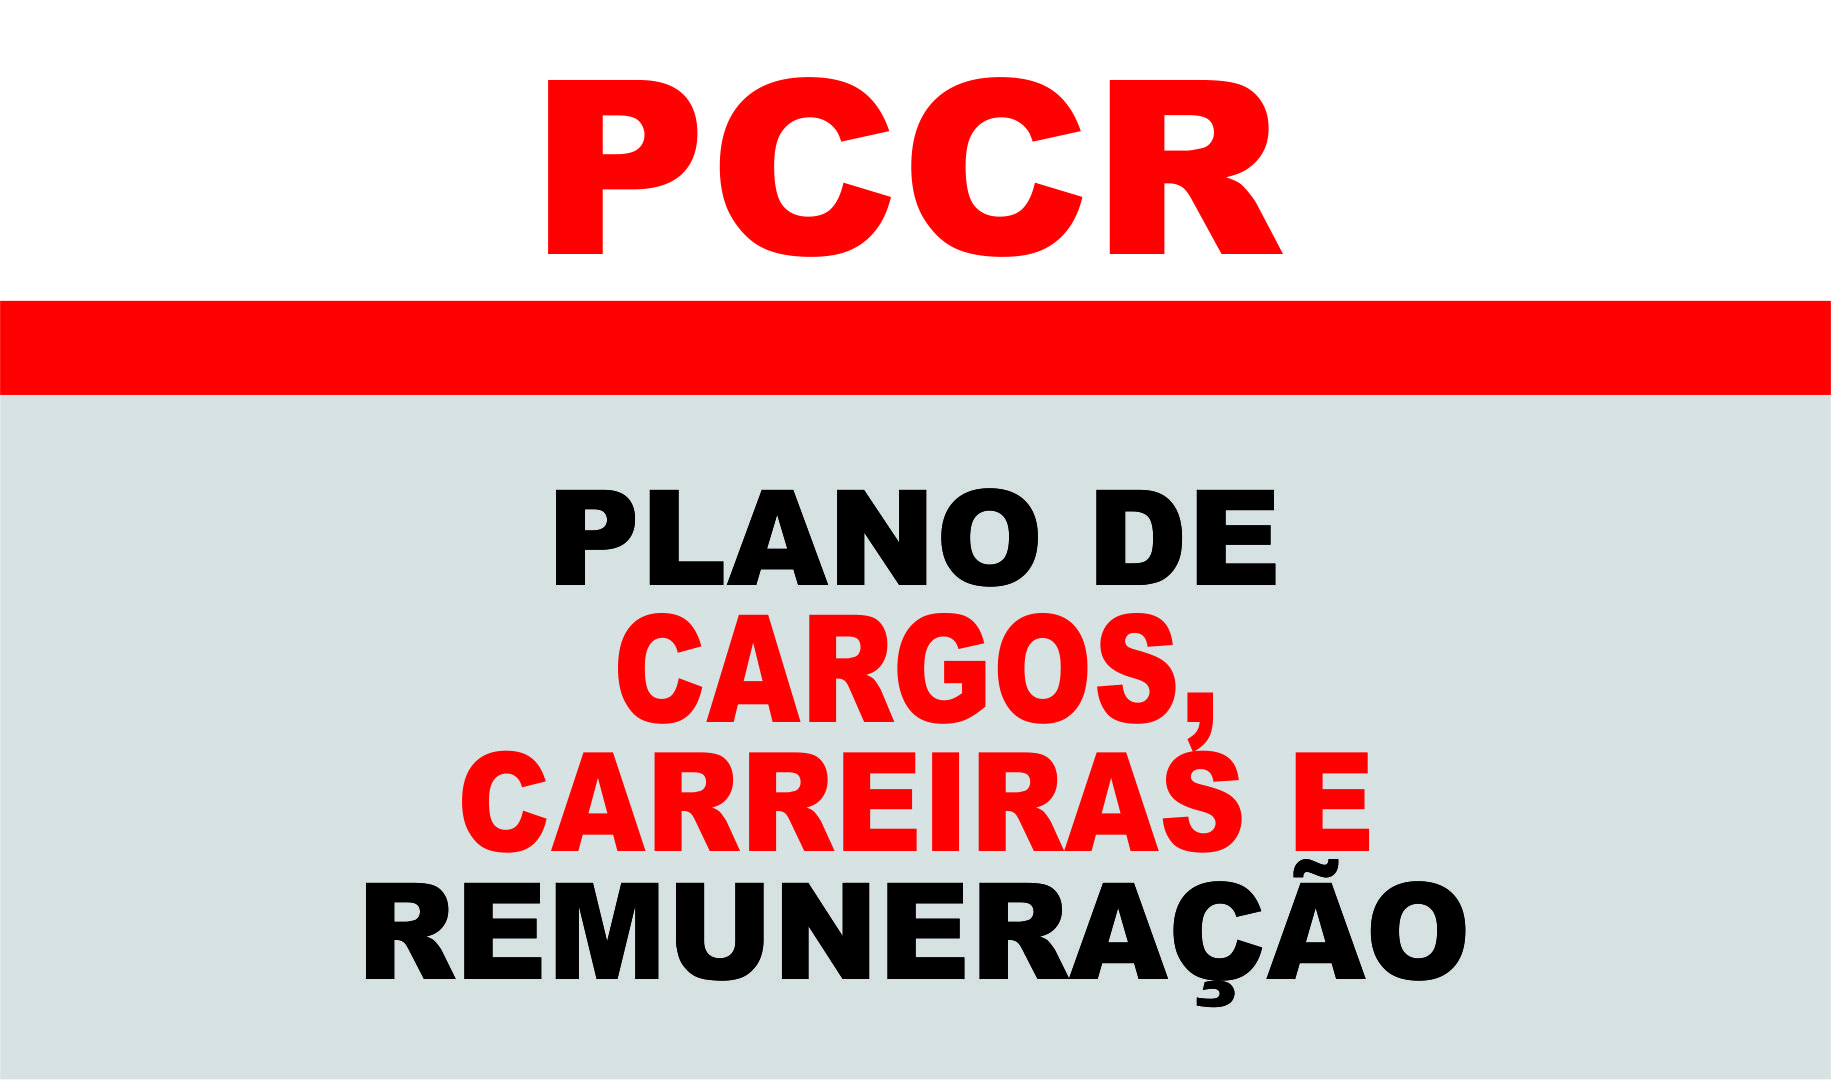 PCCR - Administração